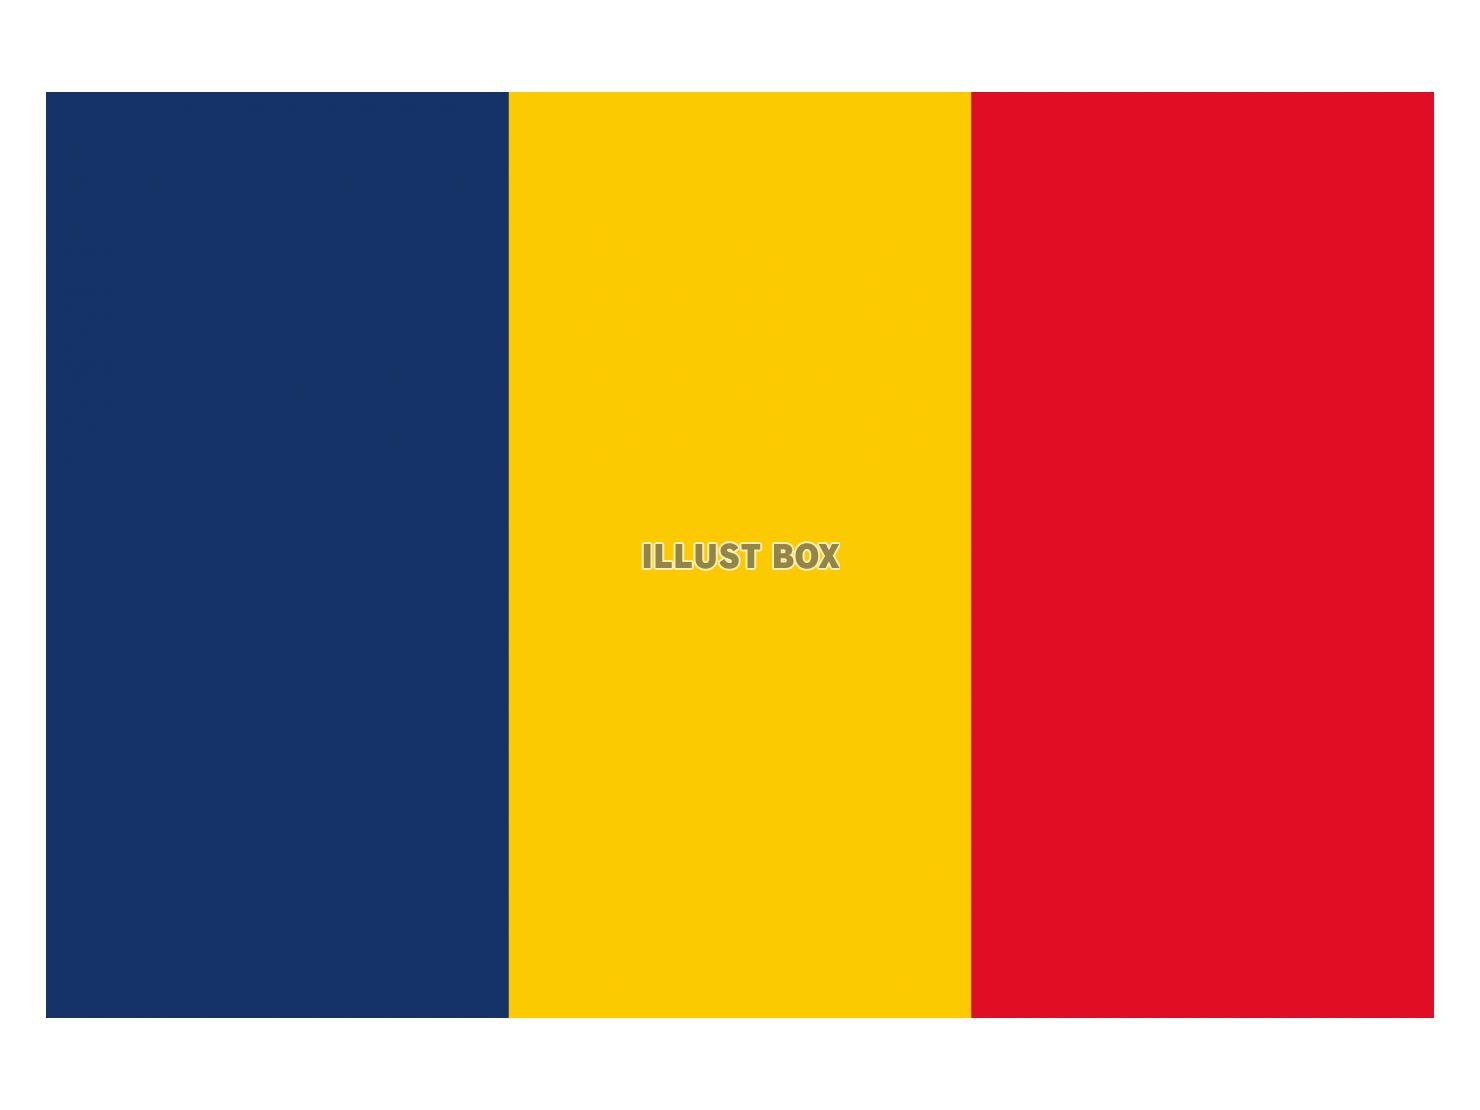 ルーマニア国旗のイラストフリー素材